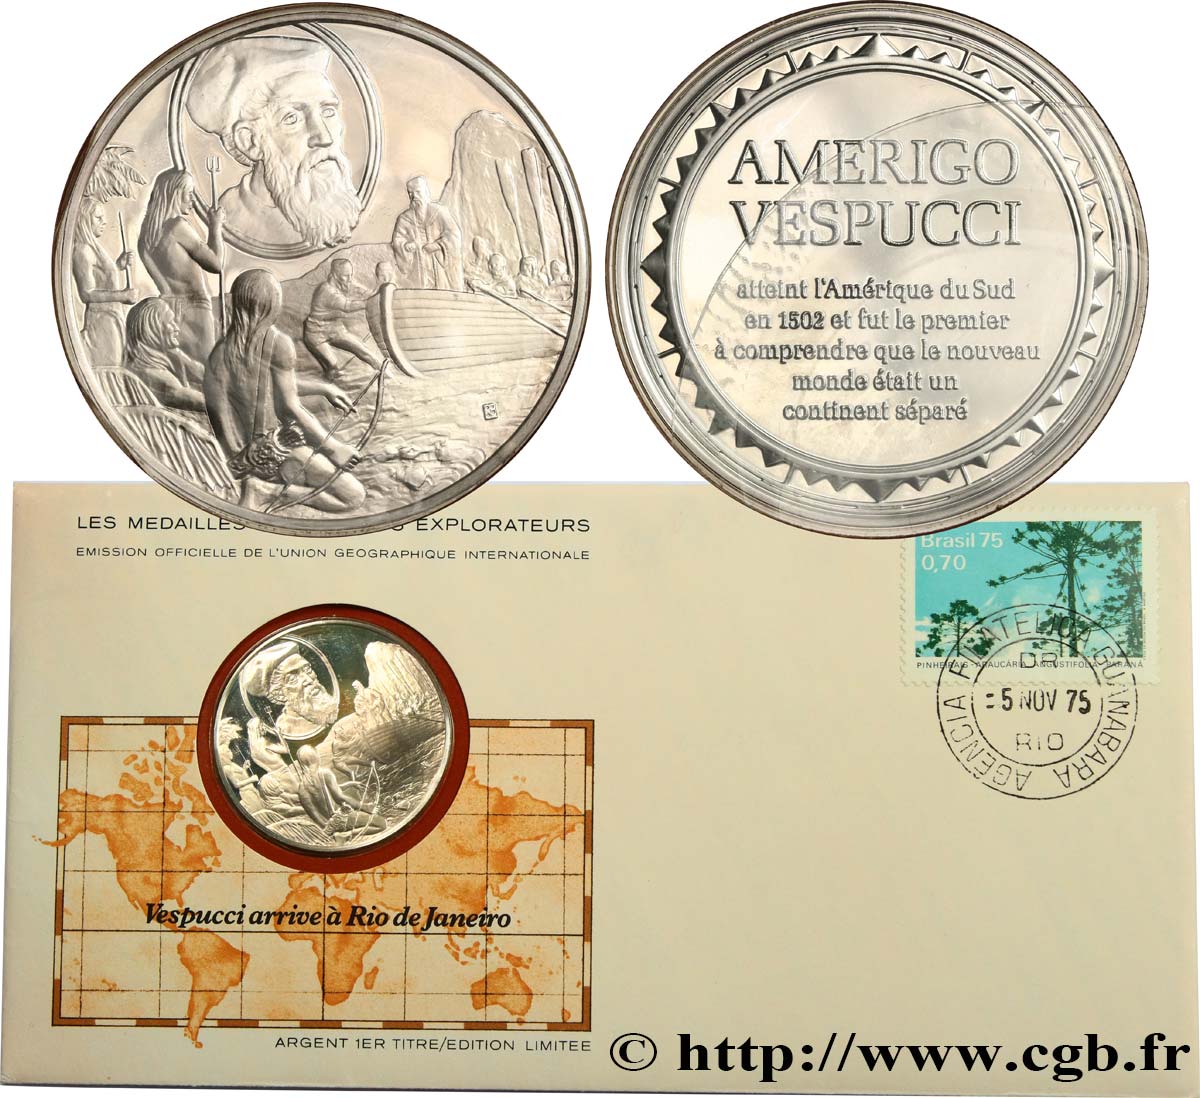 THE GREAT EXPLORERS  MEDALS Enveloppe “Timbre médaille”, Vespucci arrive à Rio de Janeiro SC